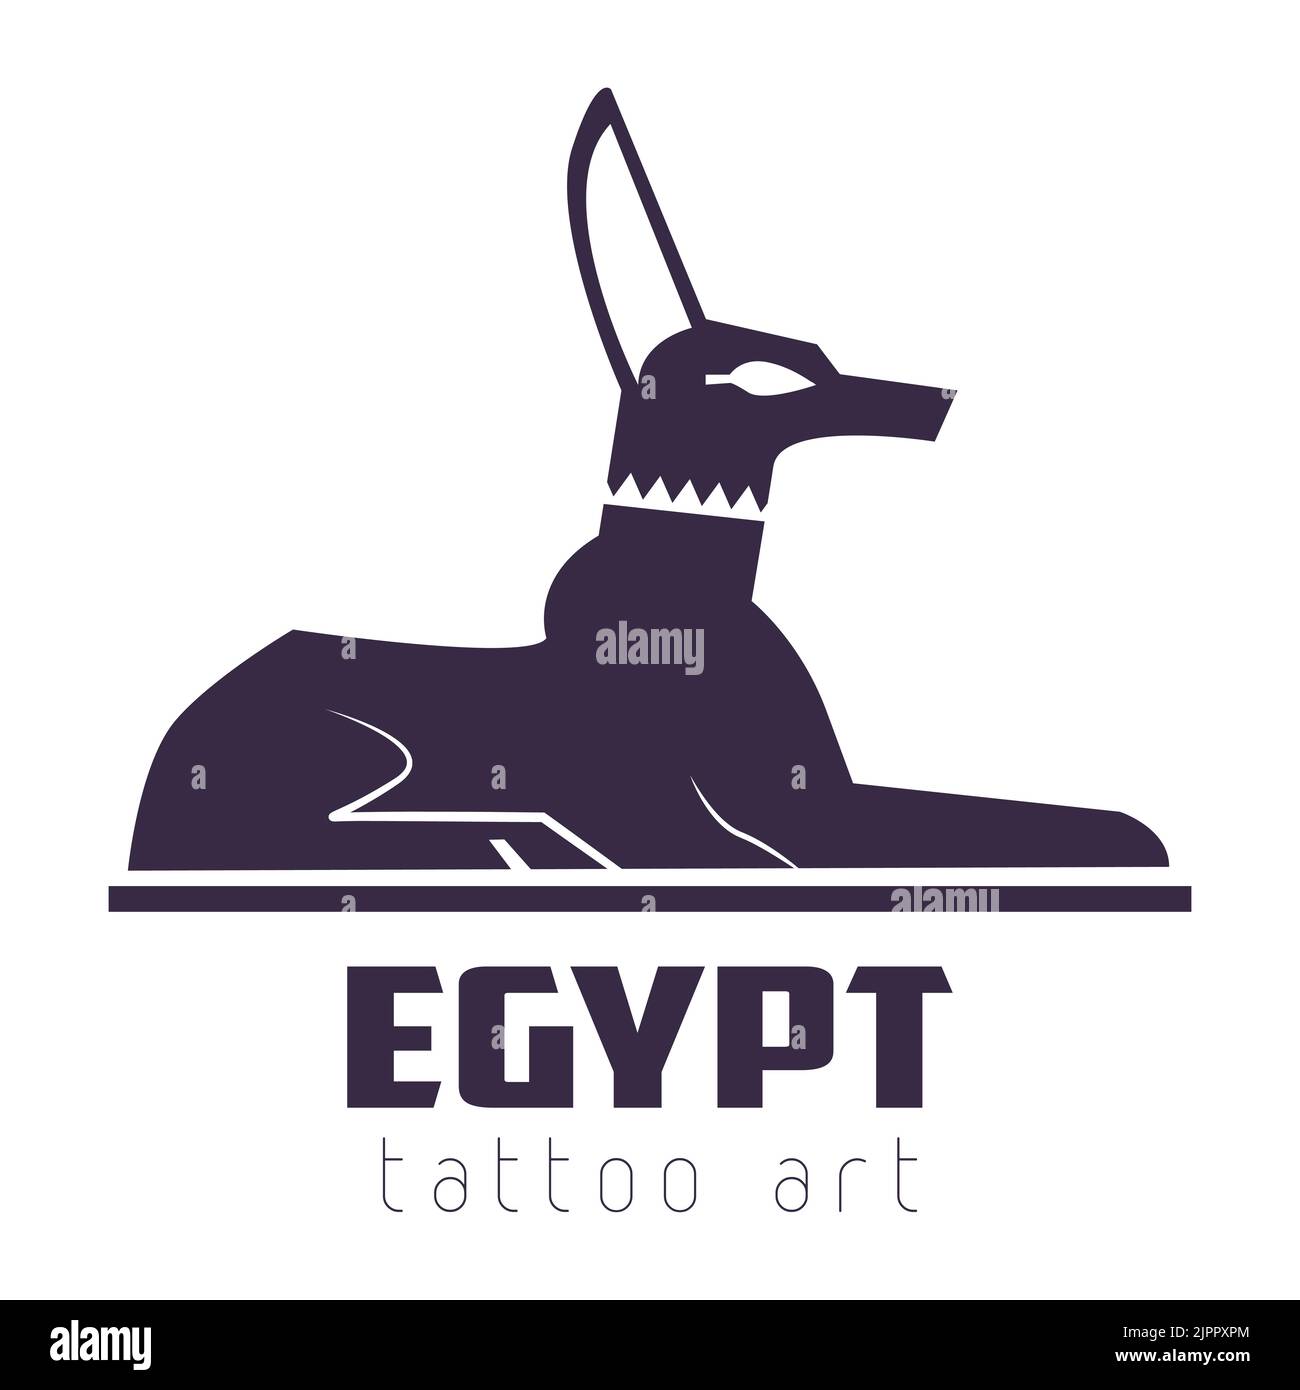 egypt tattoo art, Ancient Egypt god dog or jackal vector Stock Vector